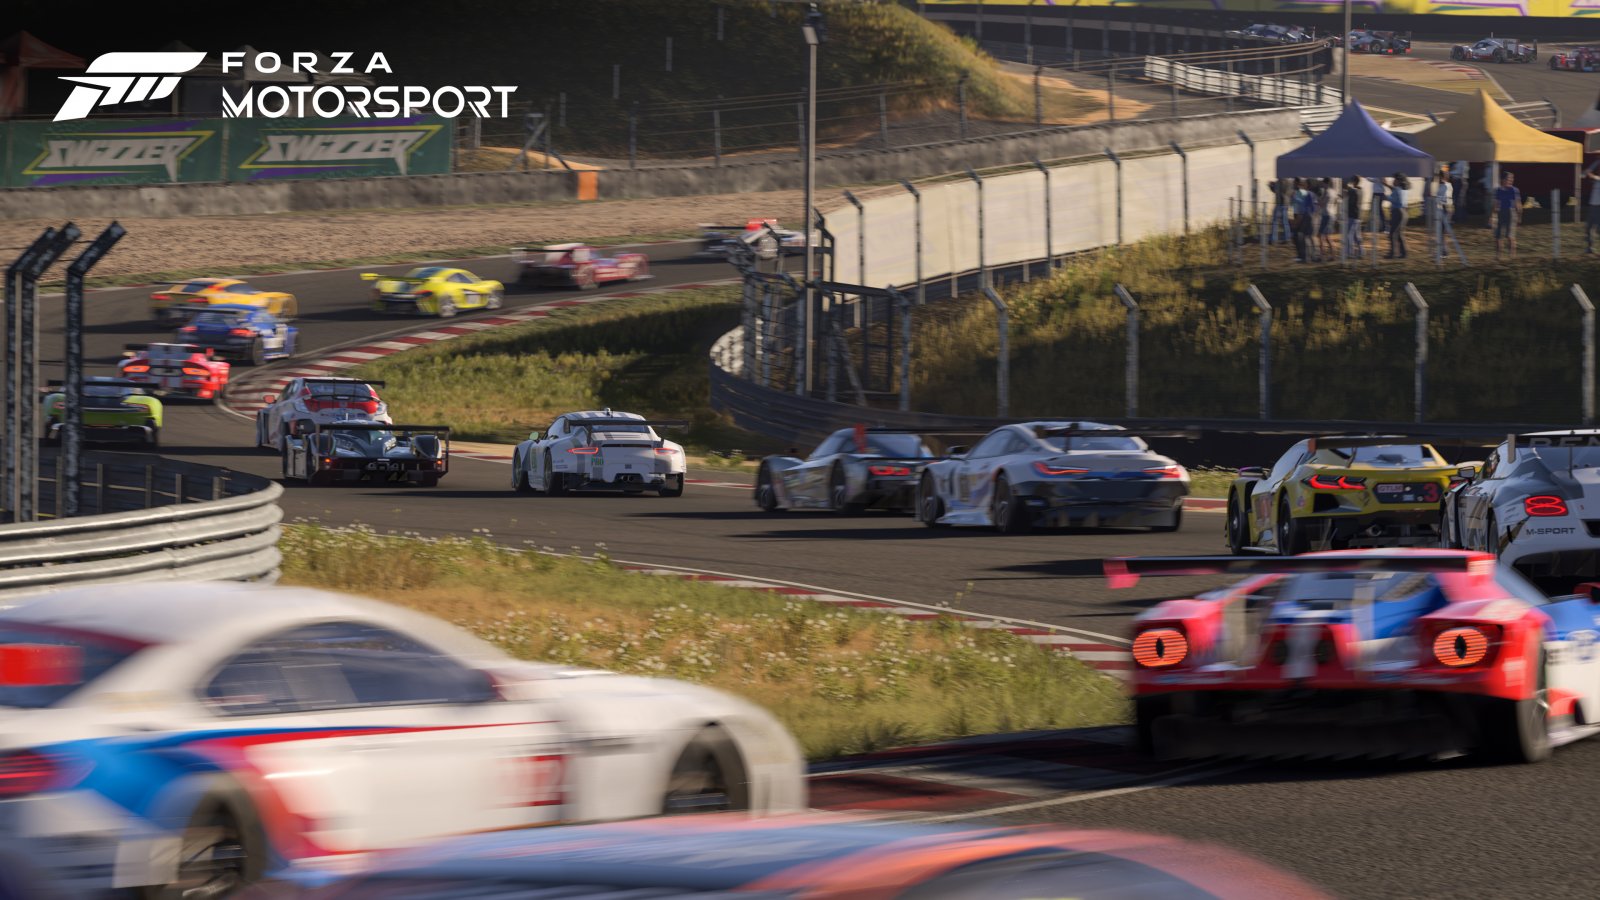 Forza Motorsport: i tracciati aggiuntivi saranno gratuiti, molti contenuti previsti